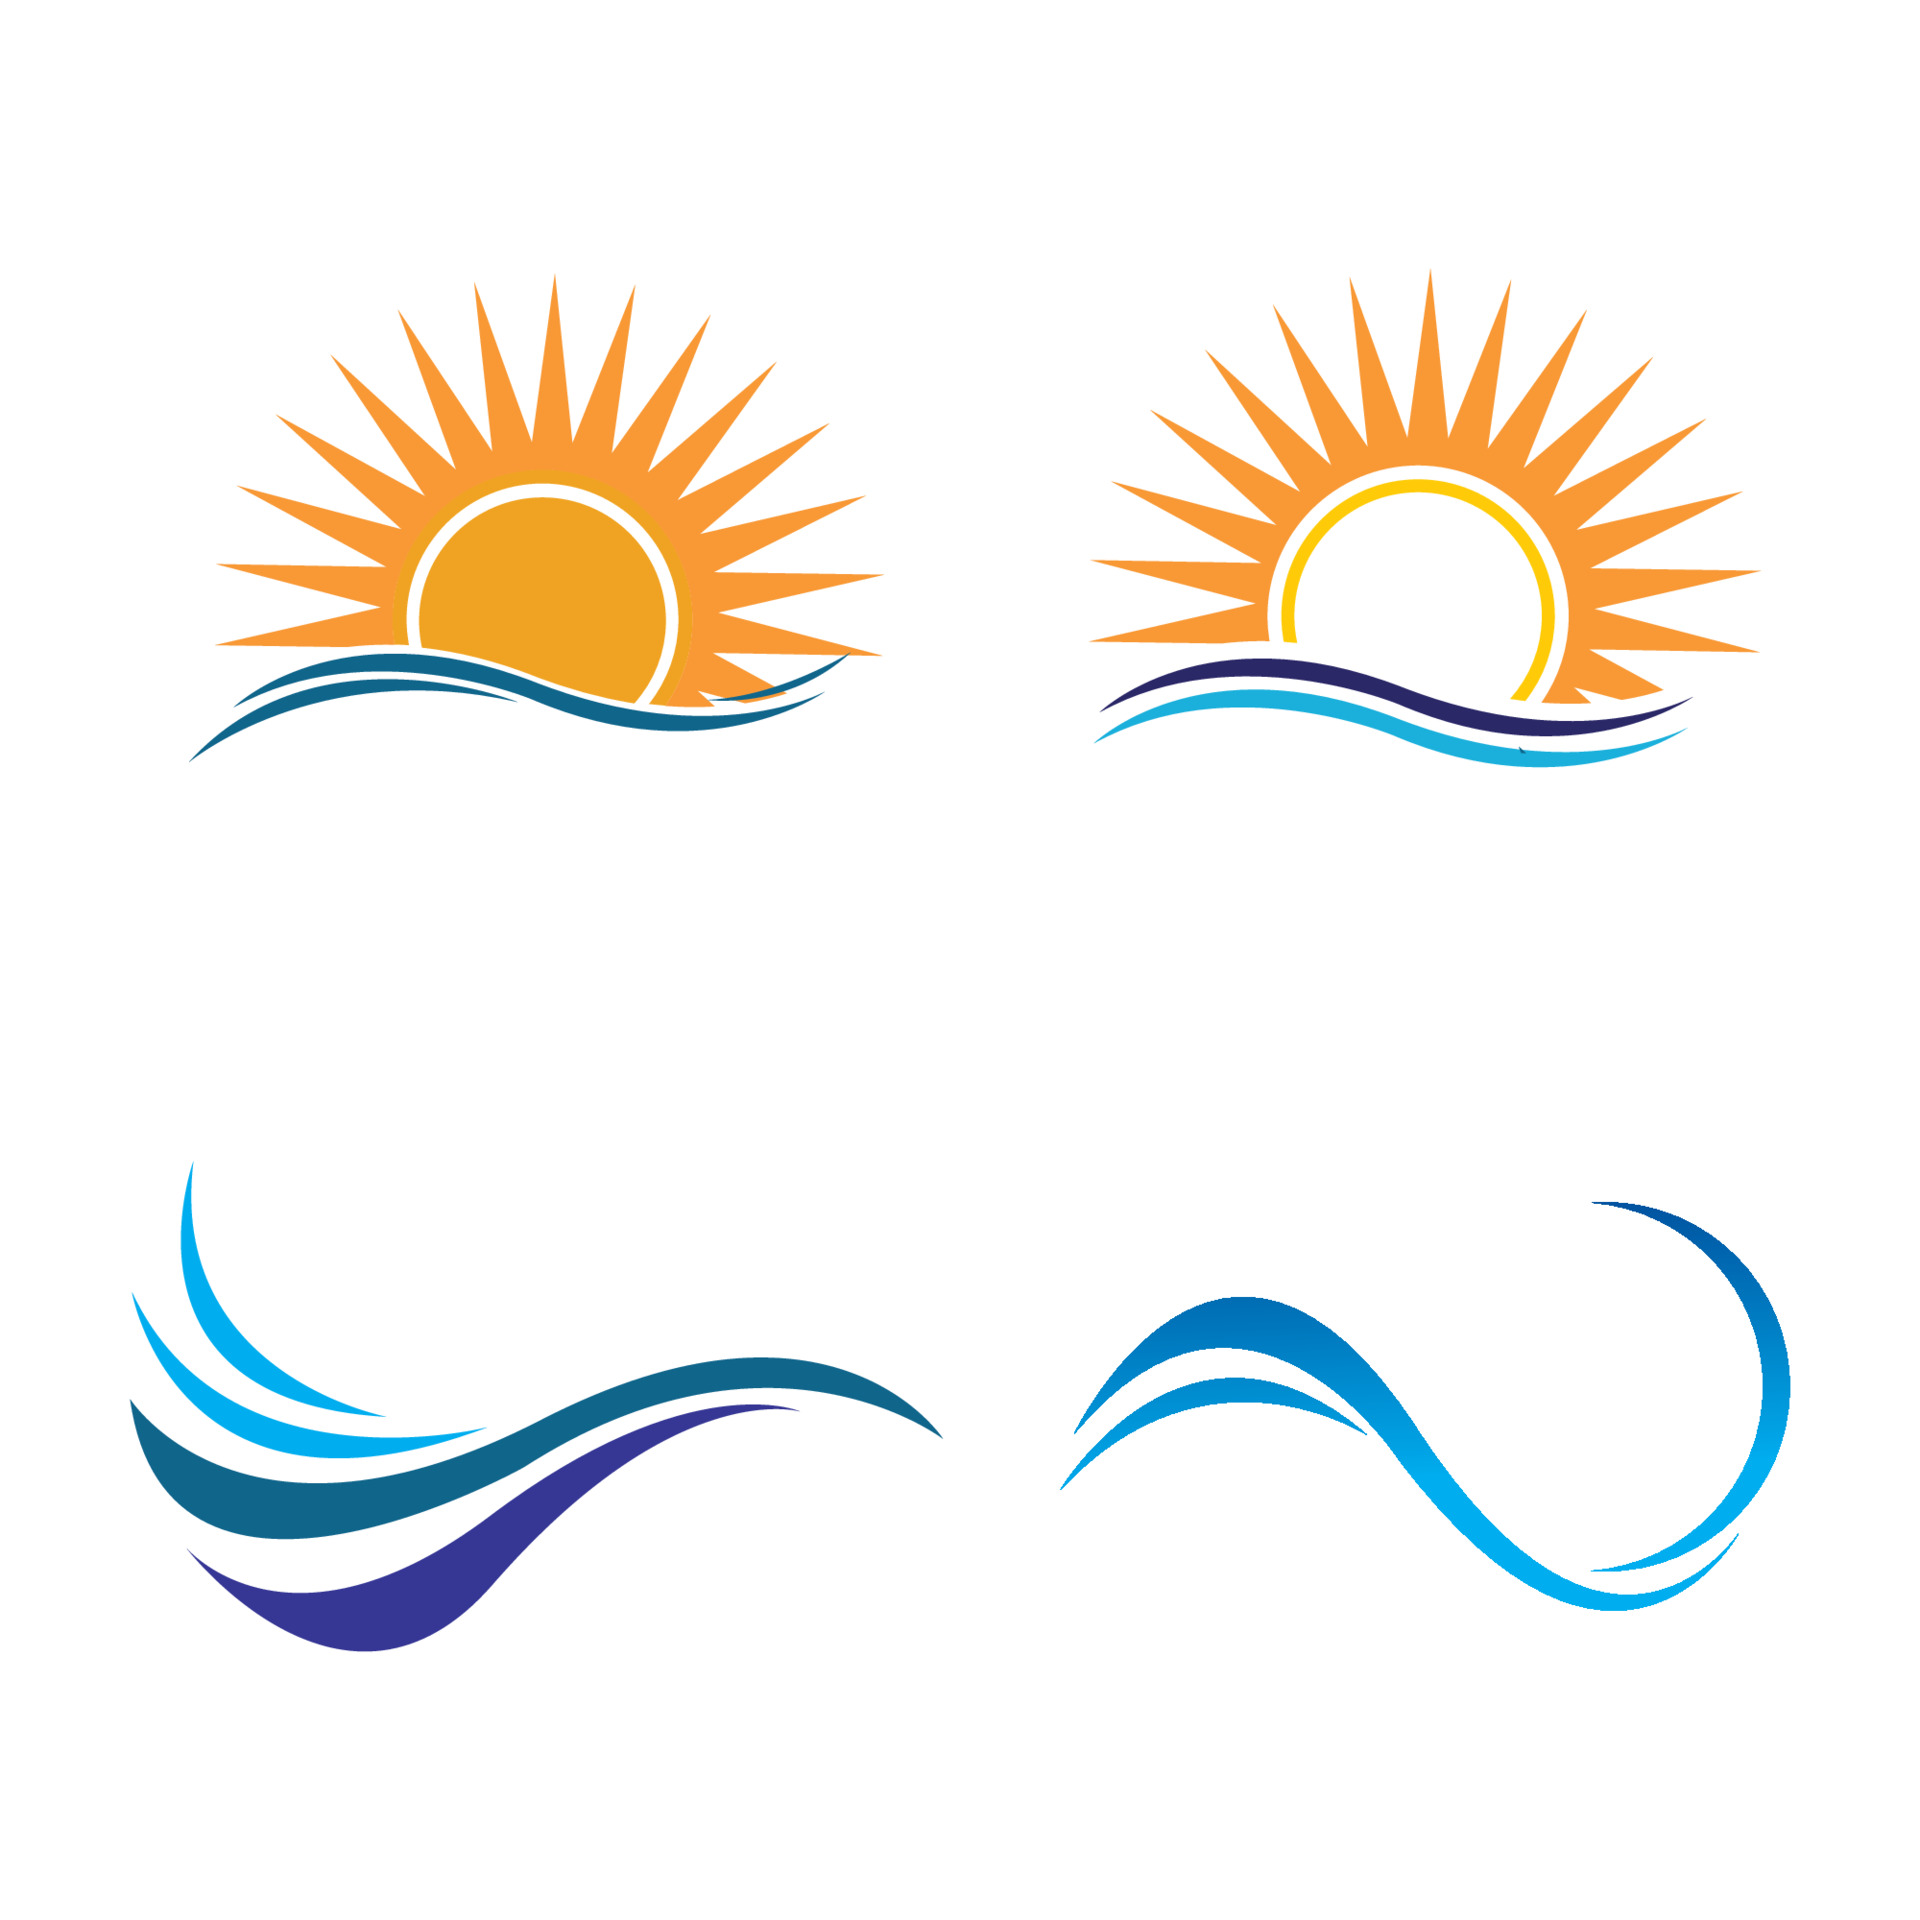 Sun logo design template, Creative | PosterMyWall